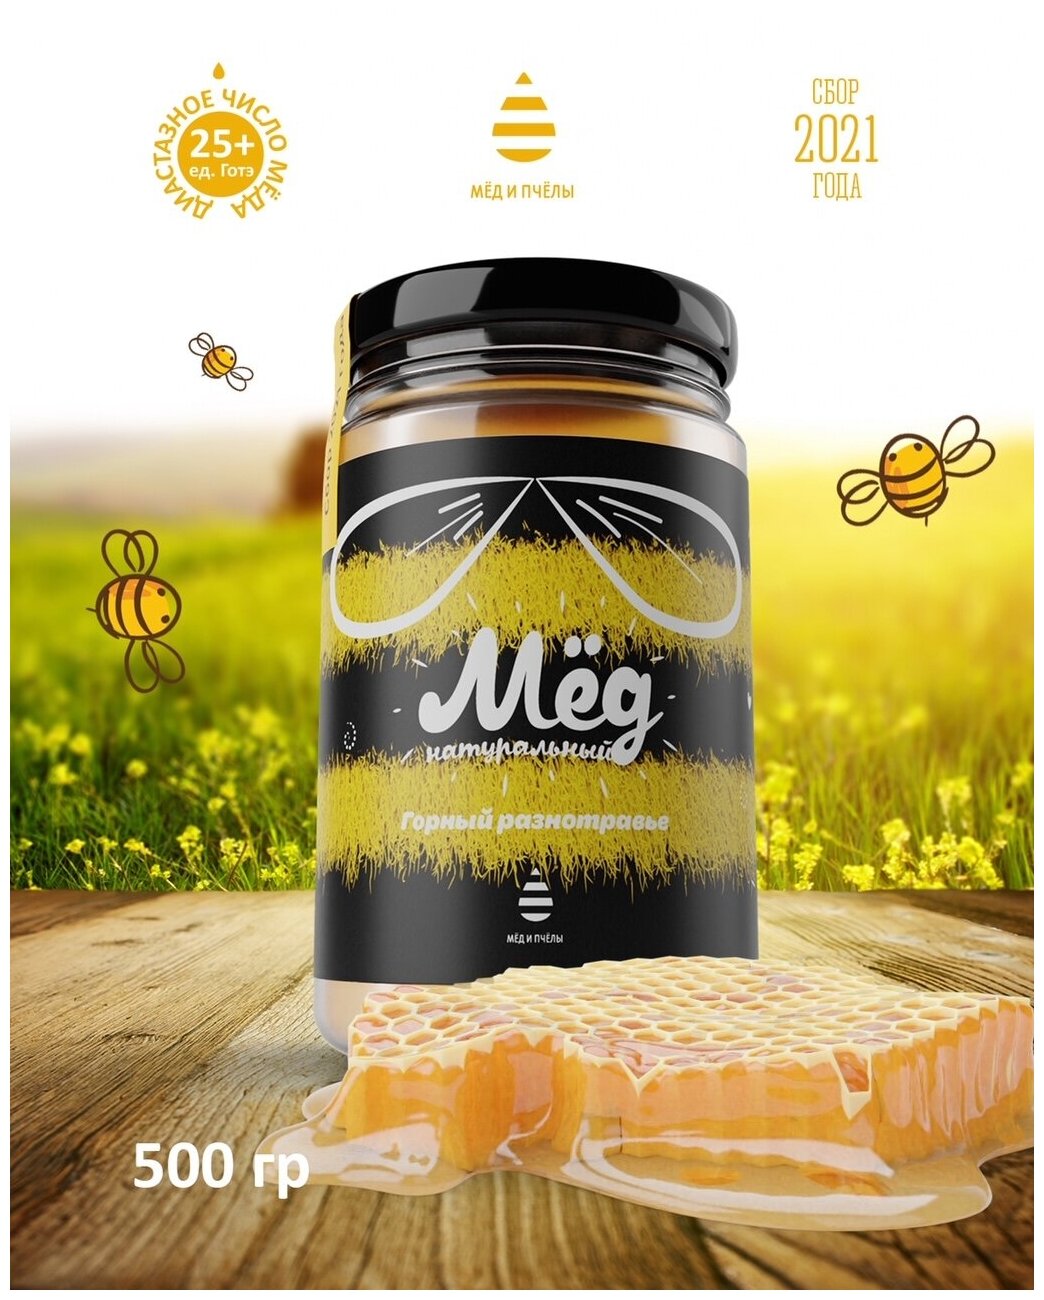 Мед натуральный горный разнотравье нетто 500 грамм/правильное питание/постный продукт/натуральная замена сахара